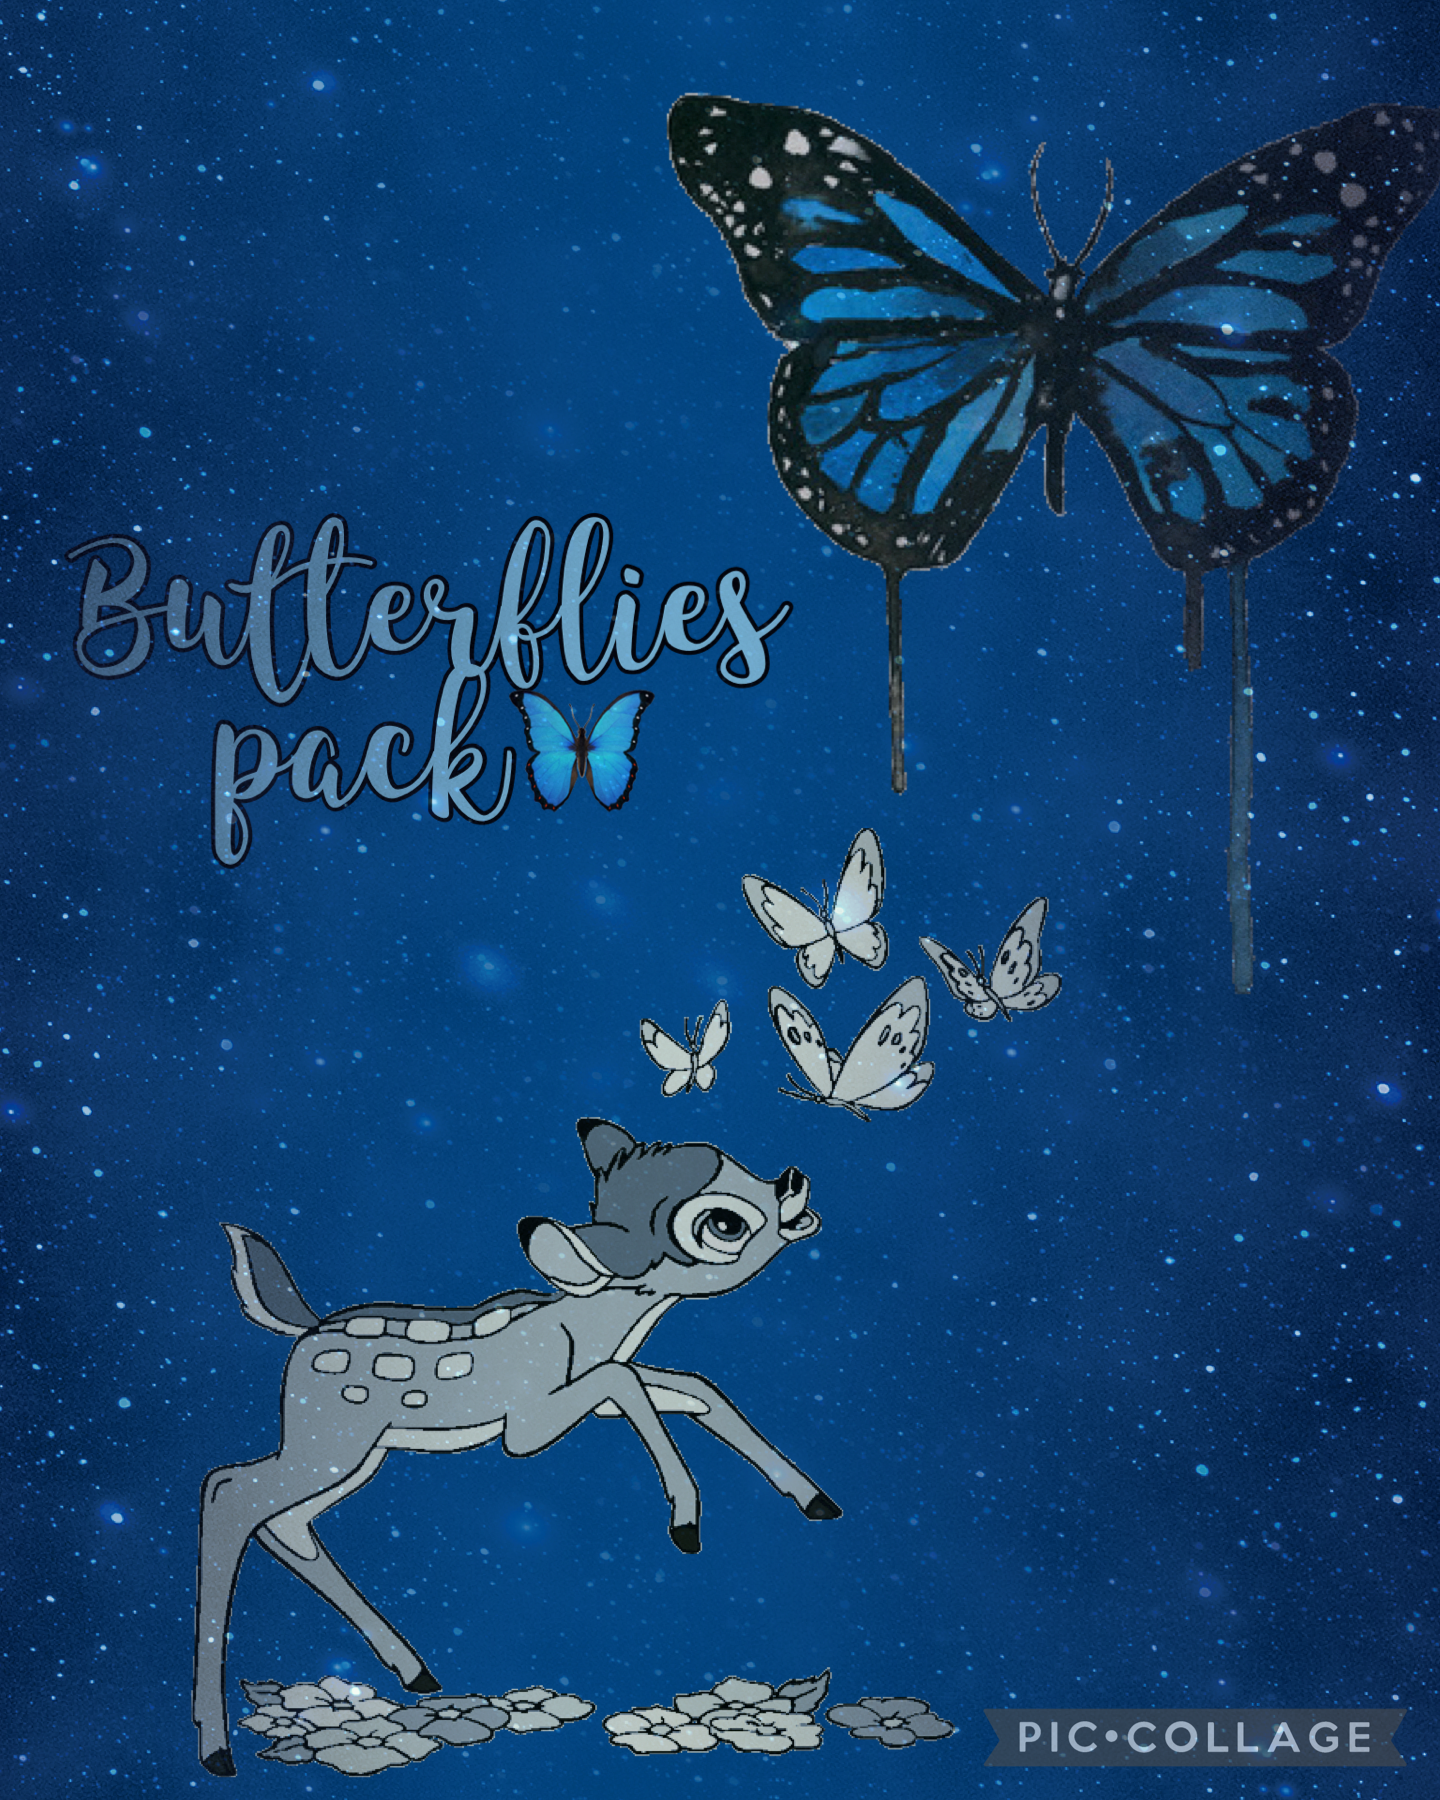 Butterflies pack😂🦋